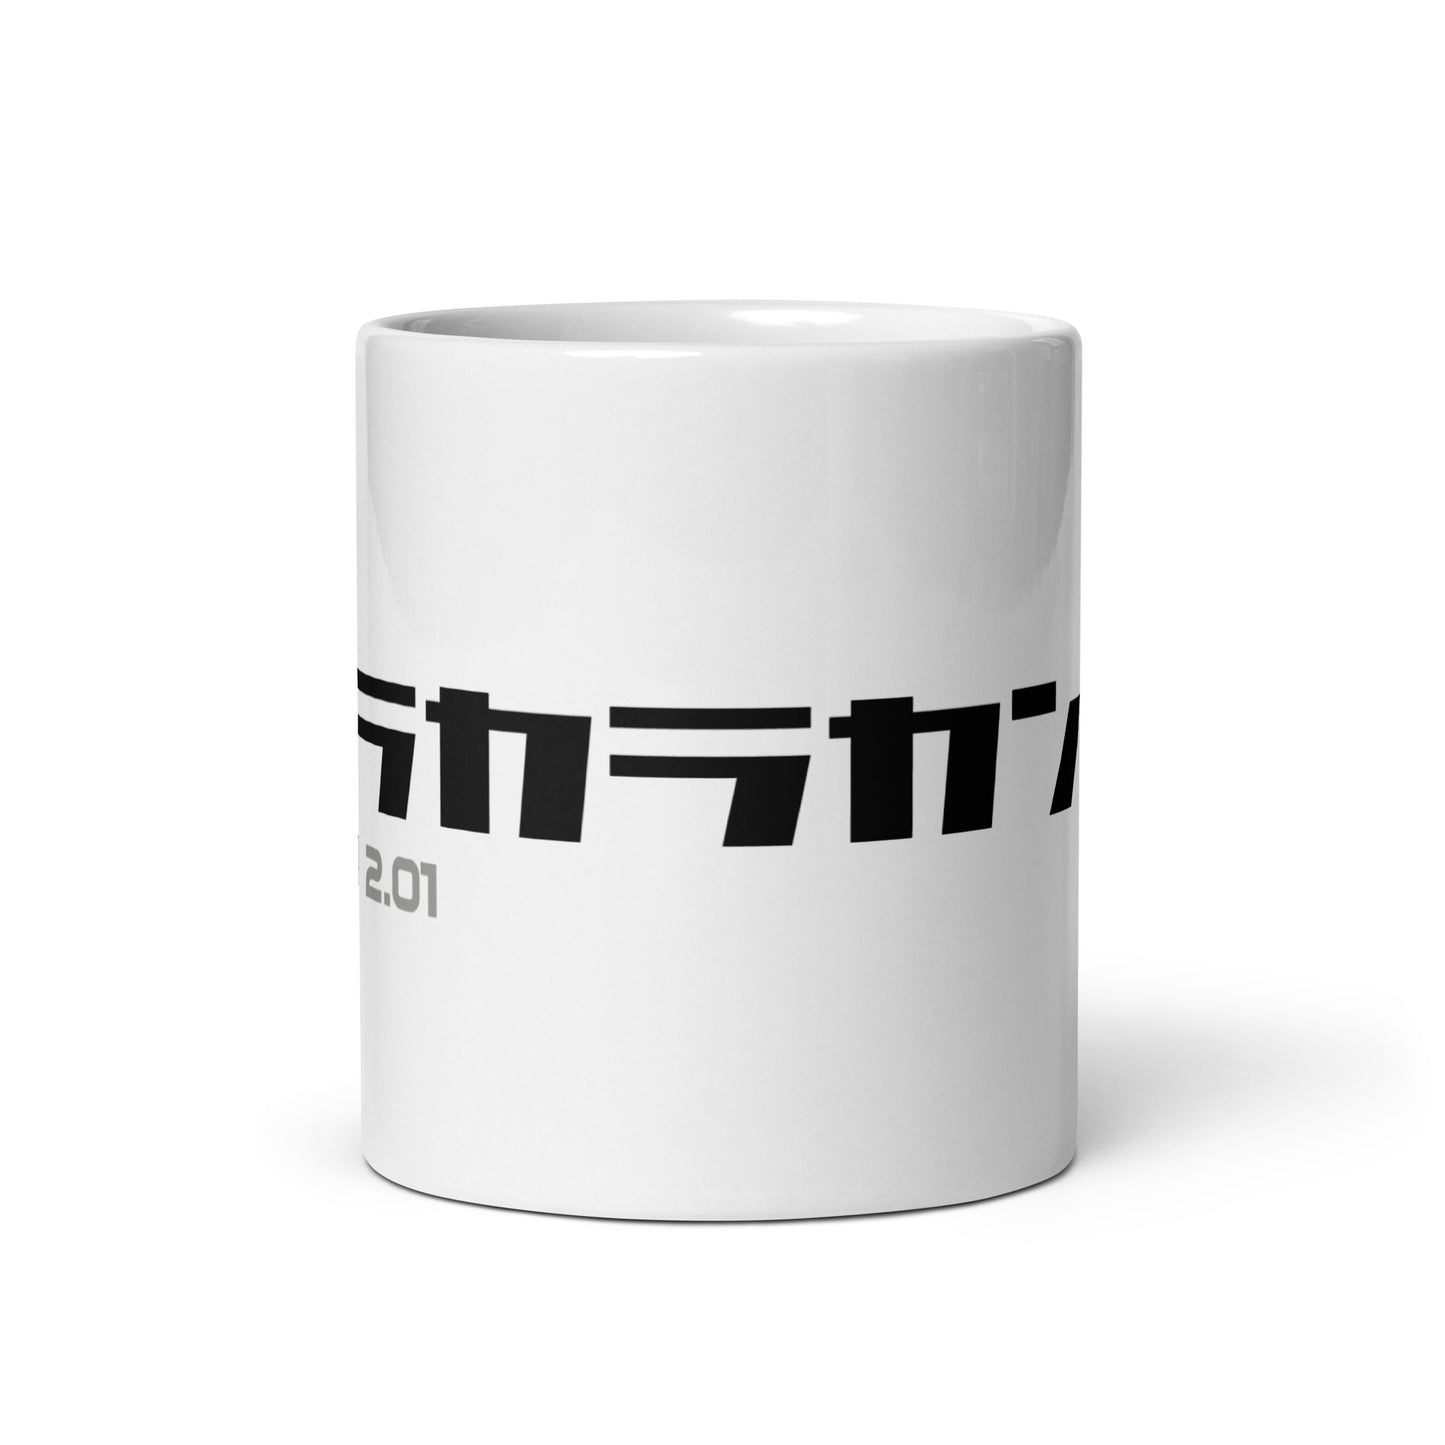 Prototype (v1) White glossy mug